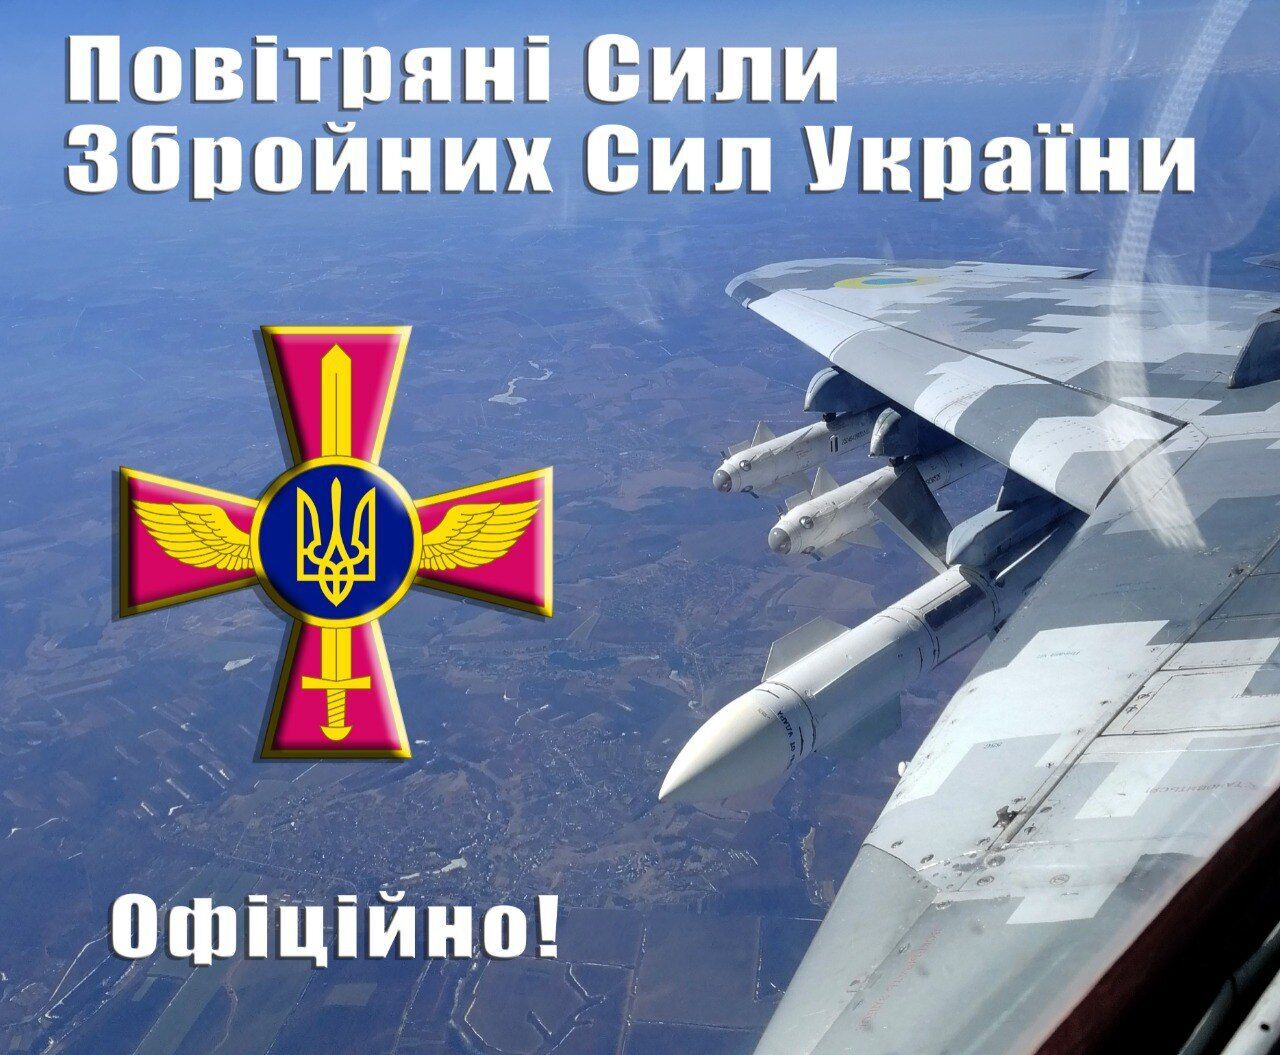 В ВС ВСУ заявили, что Украина не получала новых самолетов от западных партнеров